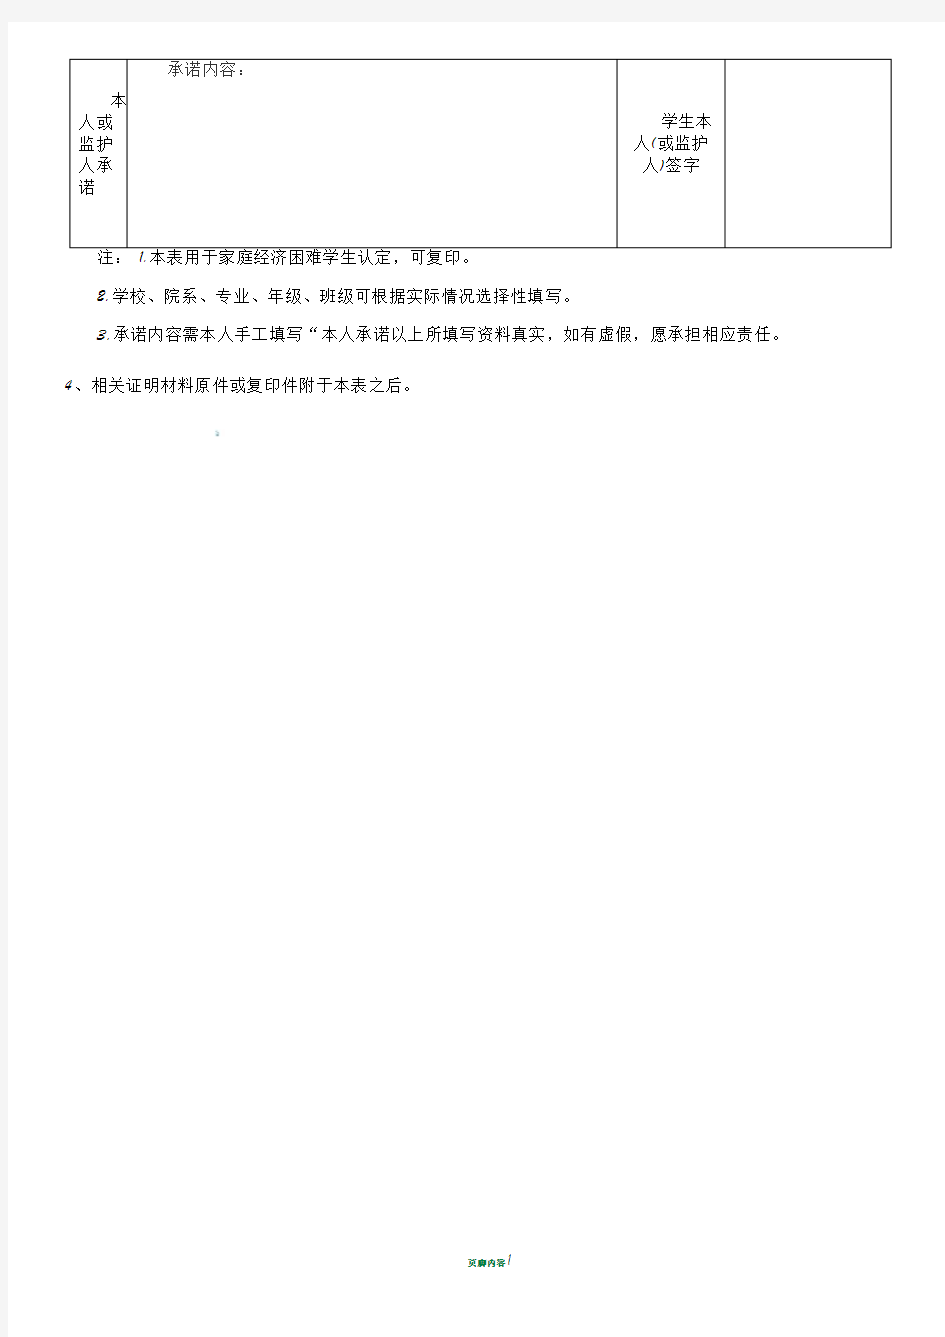 河南省家庭经济困难学生认定申请表模板